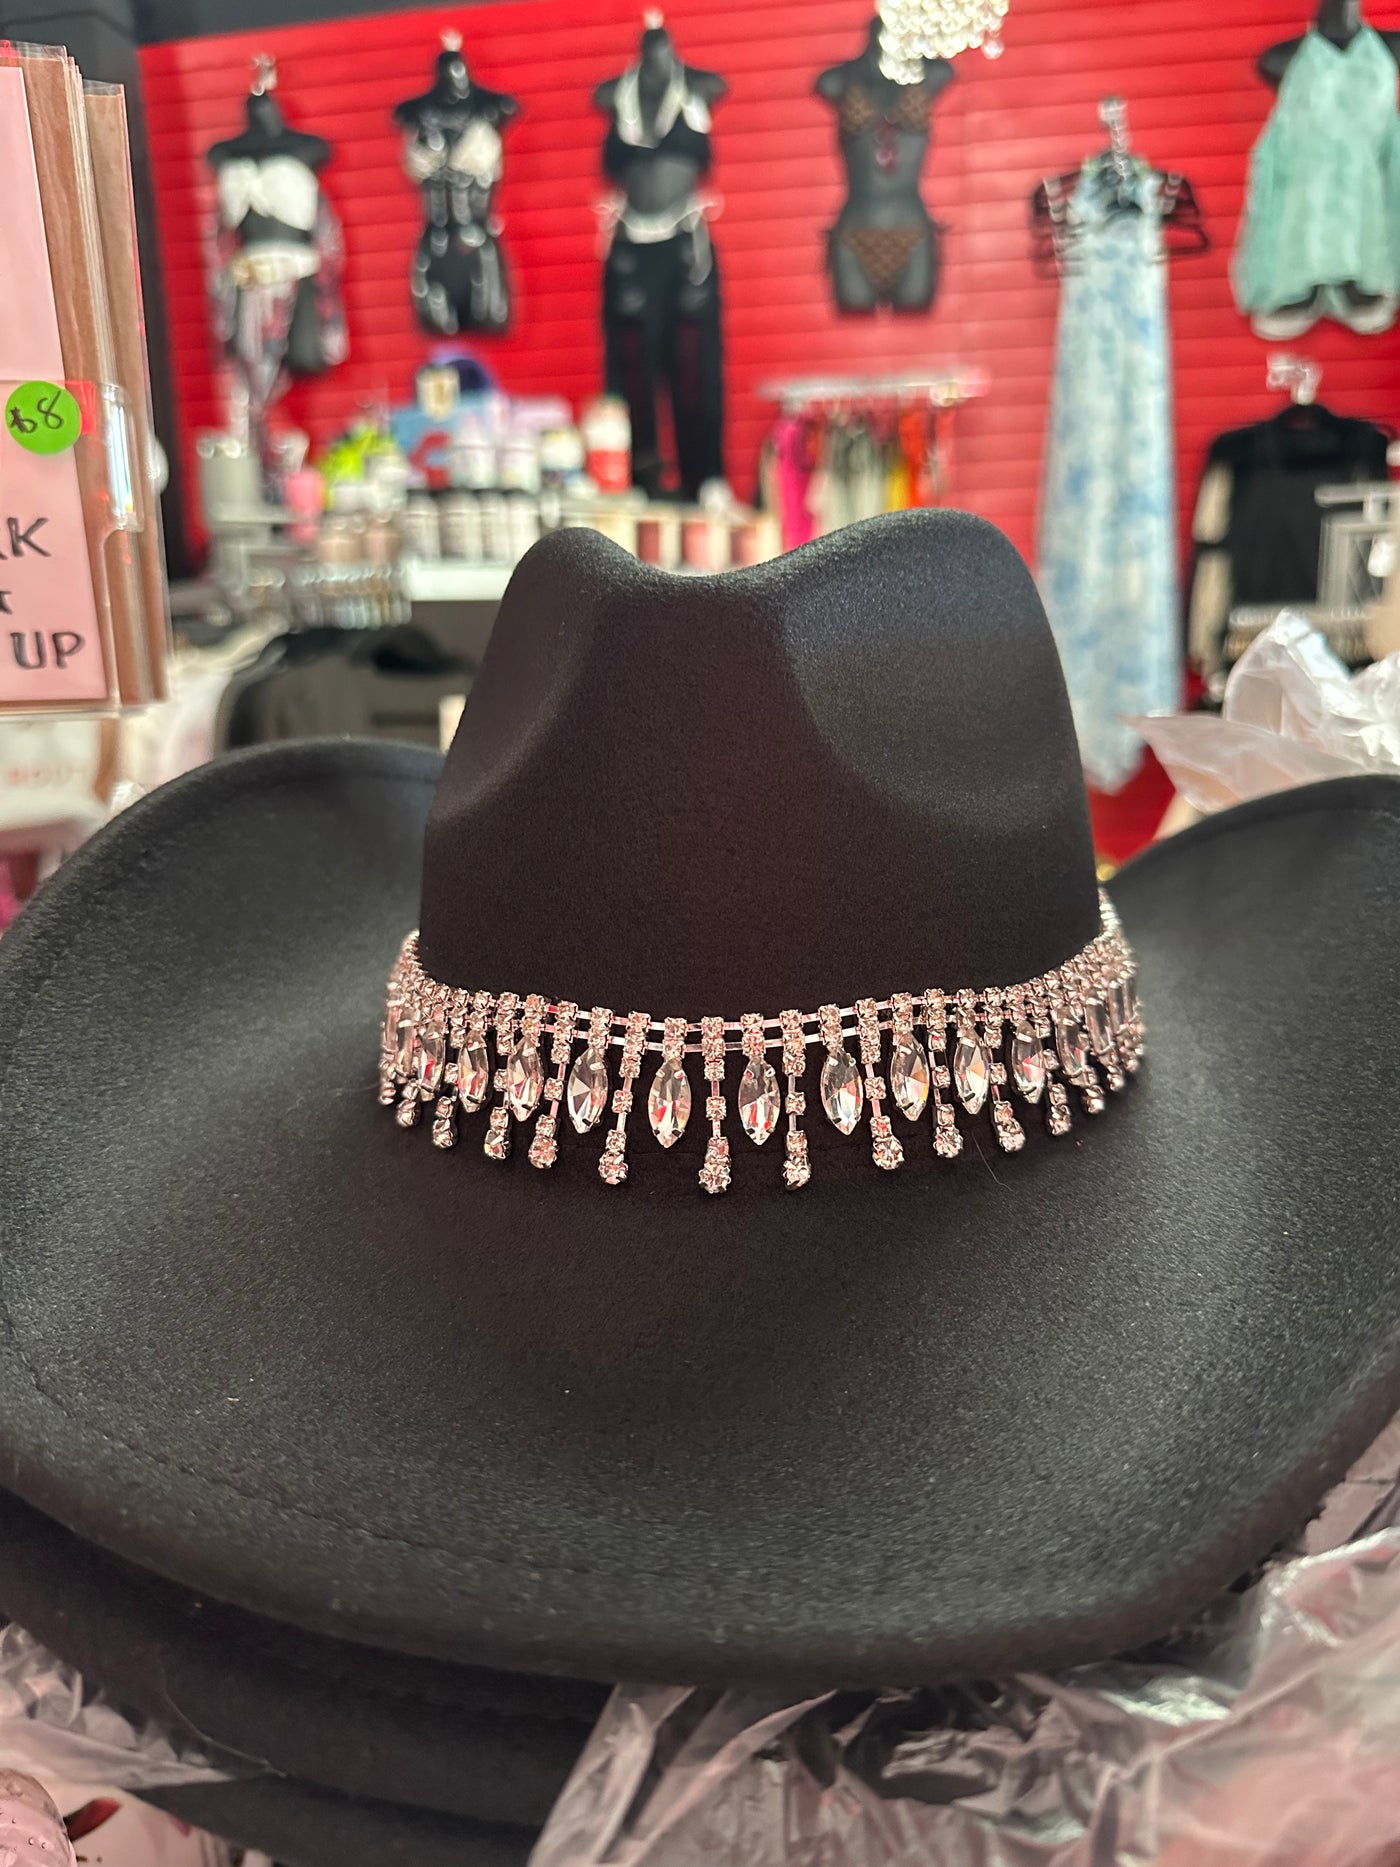 Black felt rhinestone bling cowgirl hat